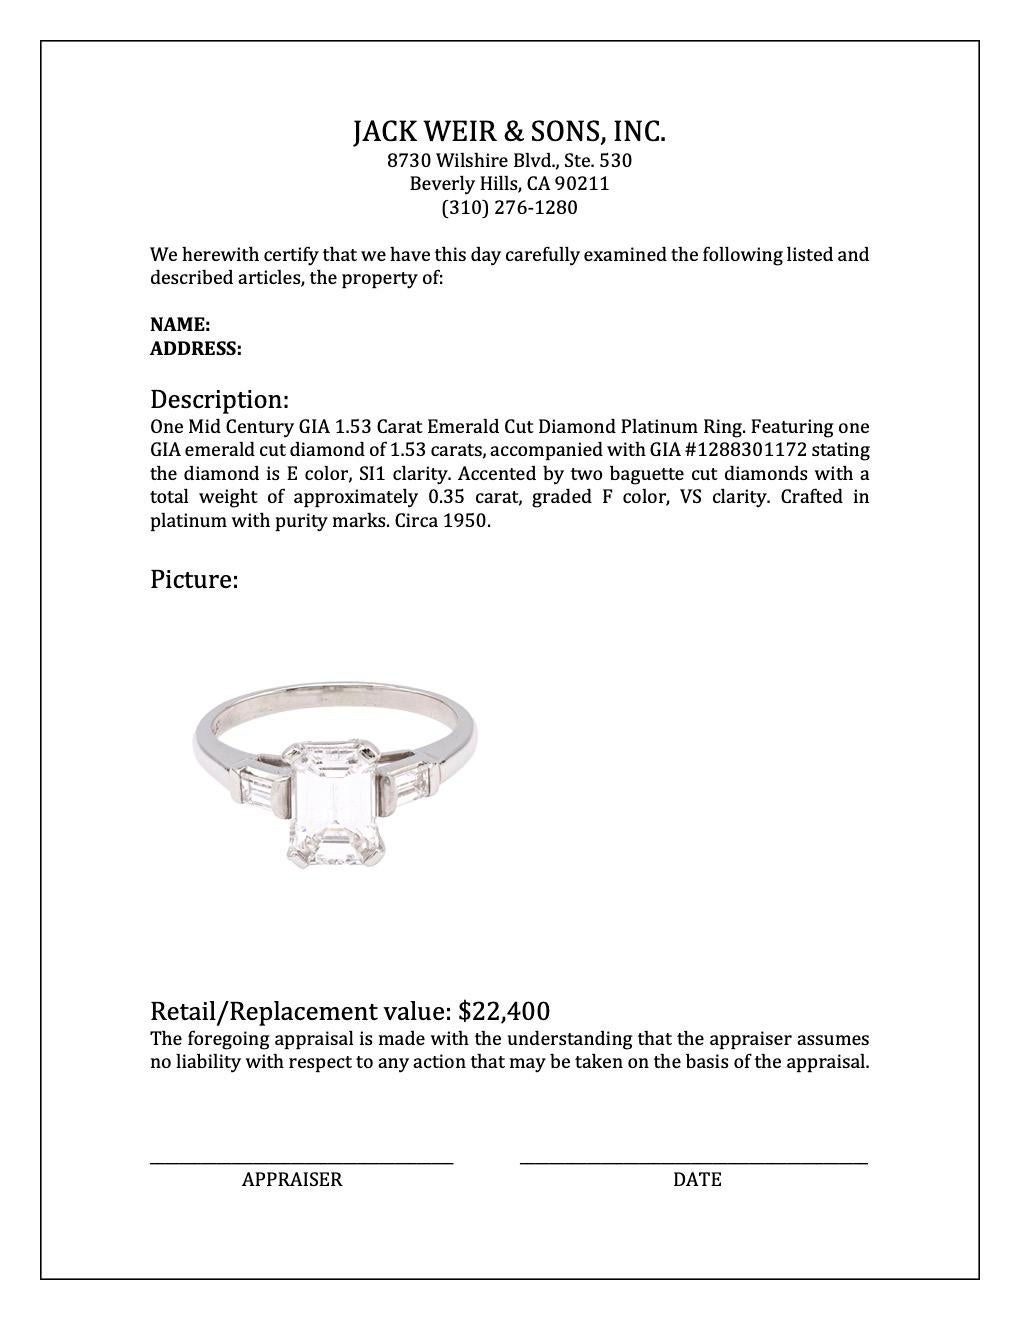 Mid Century GIA 1.53 Carat Emerald Cut Diamond Platinum Ring 4